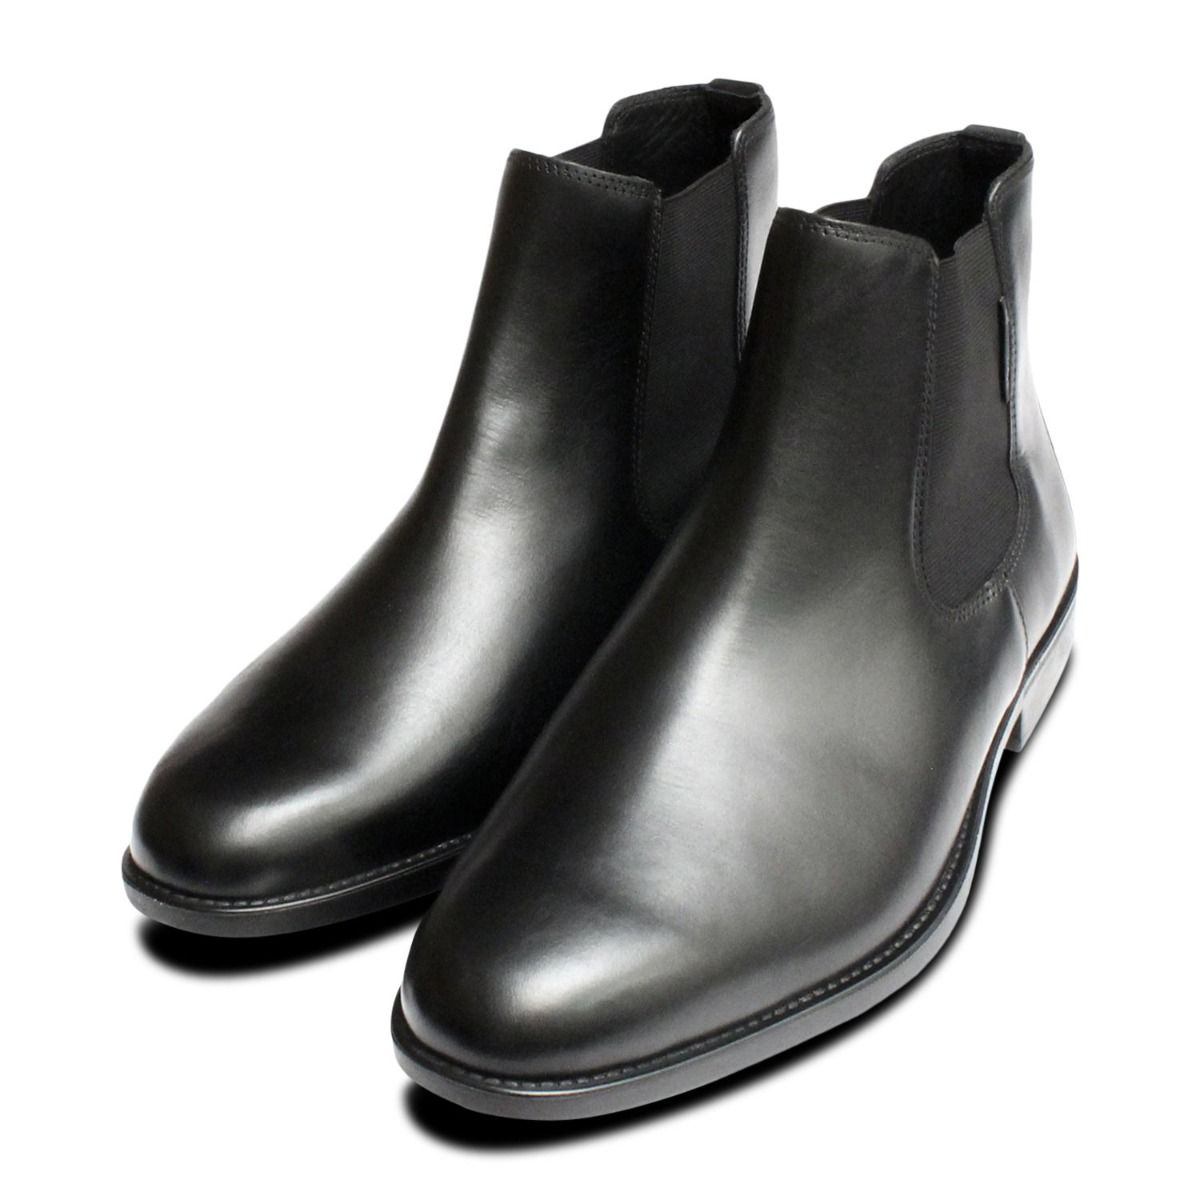 mephisto chelsea boots